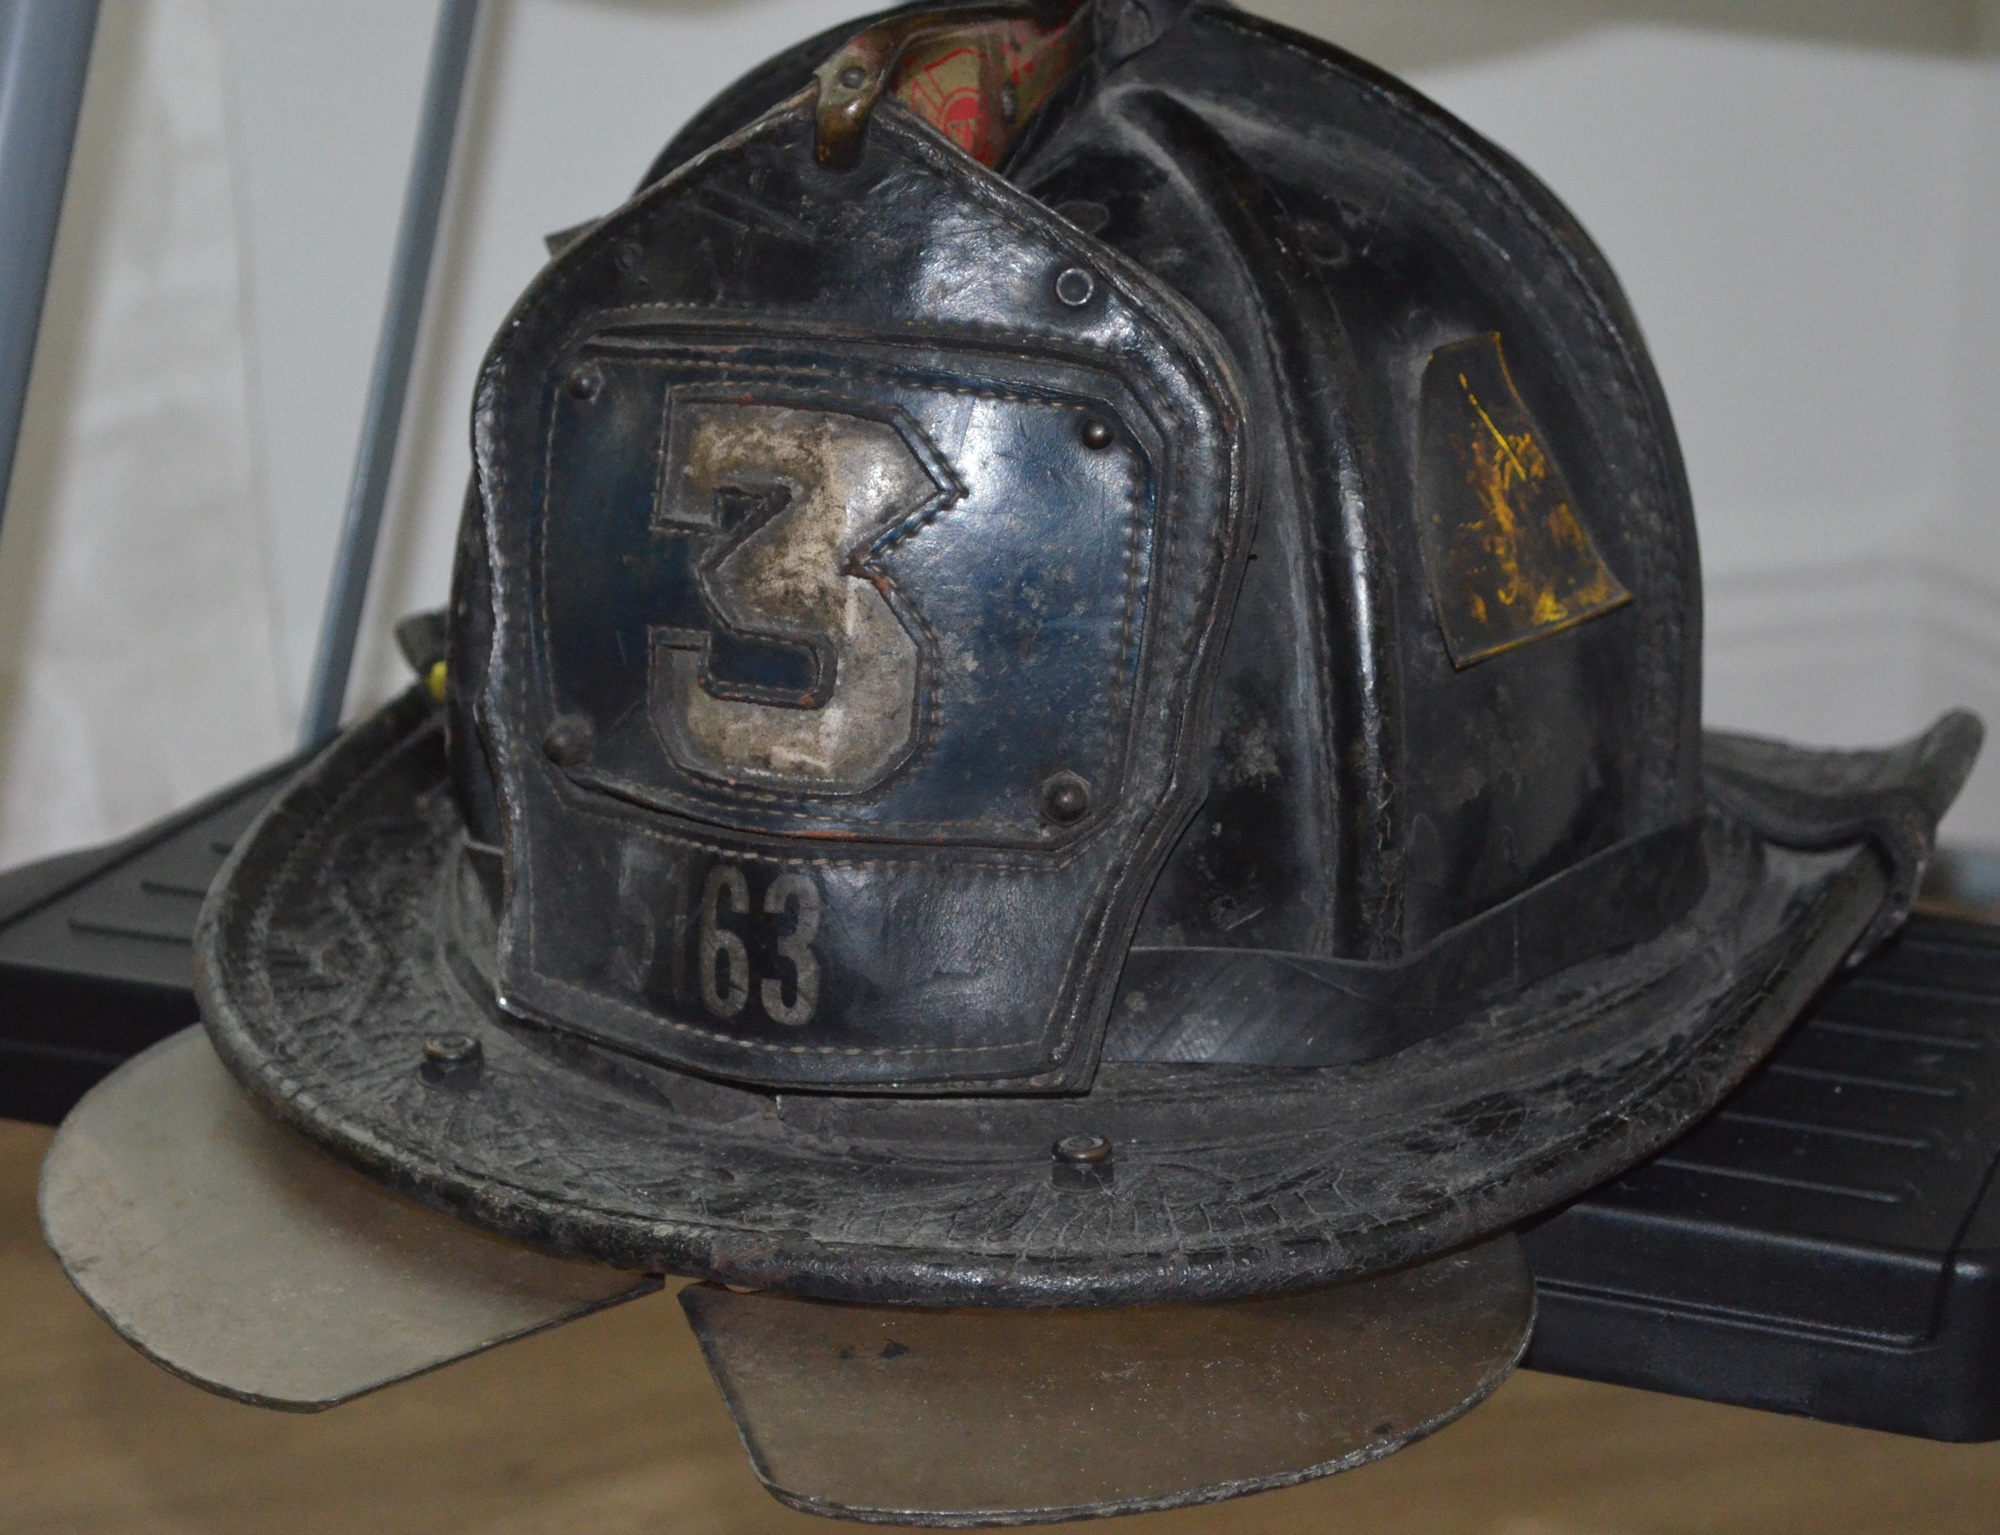 The helmet that Garrett Lindgren wore on 9/11.